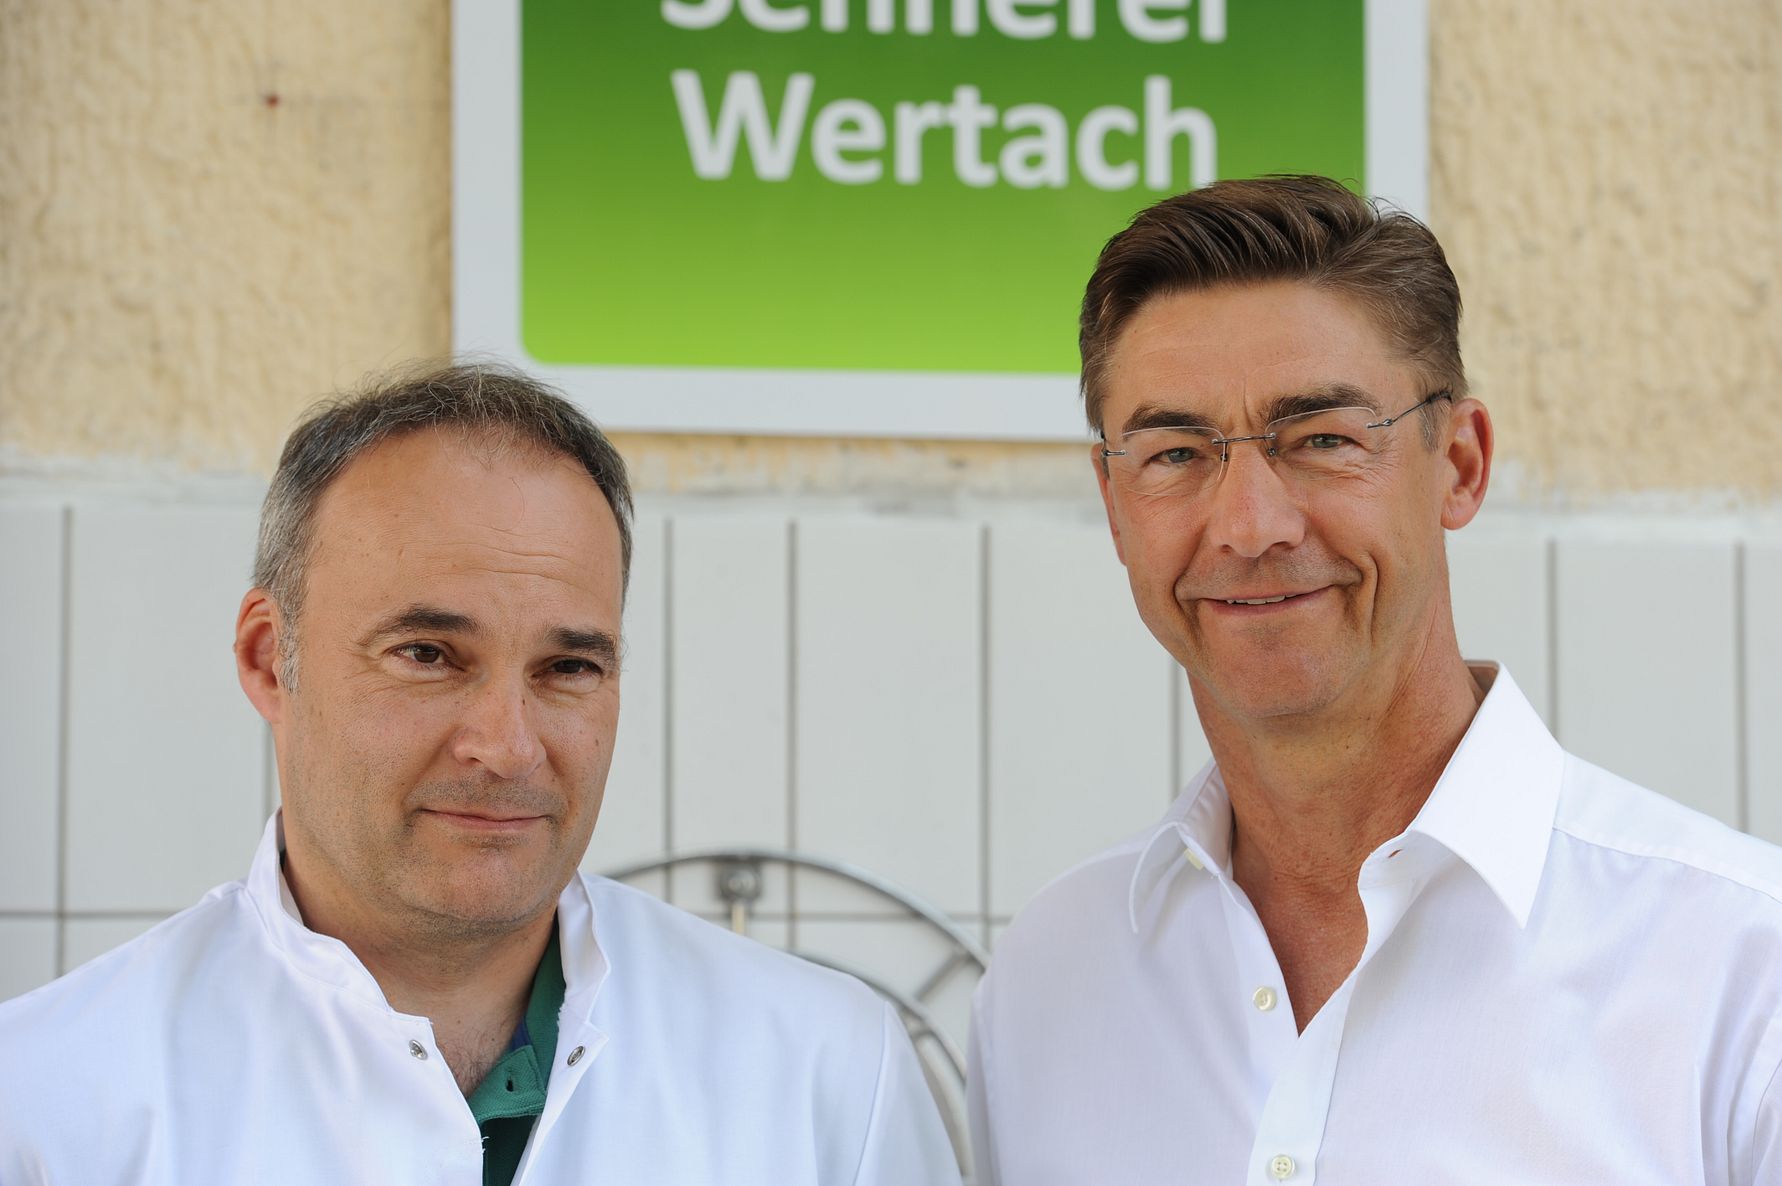 Erstklassige Qualität: Arla Sennerei in Wertach nach IFS Version 6 auf höherem Niveau zertifiziert